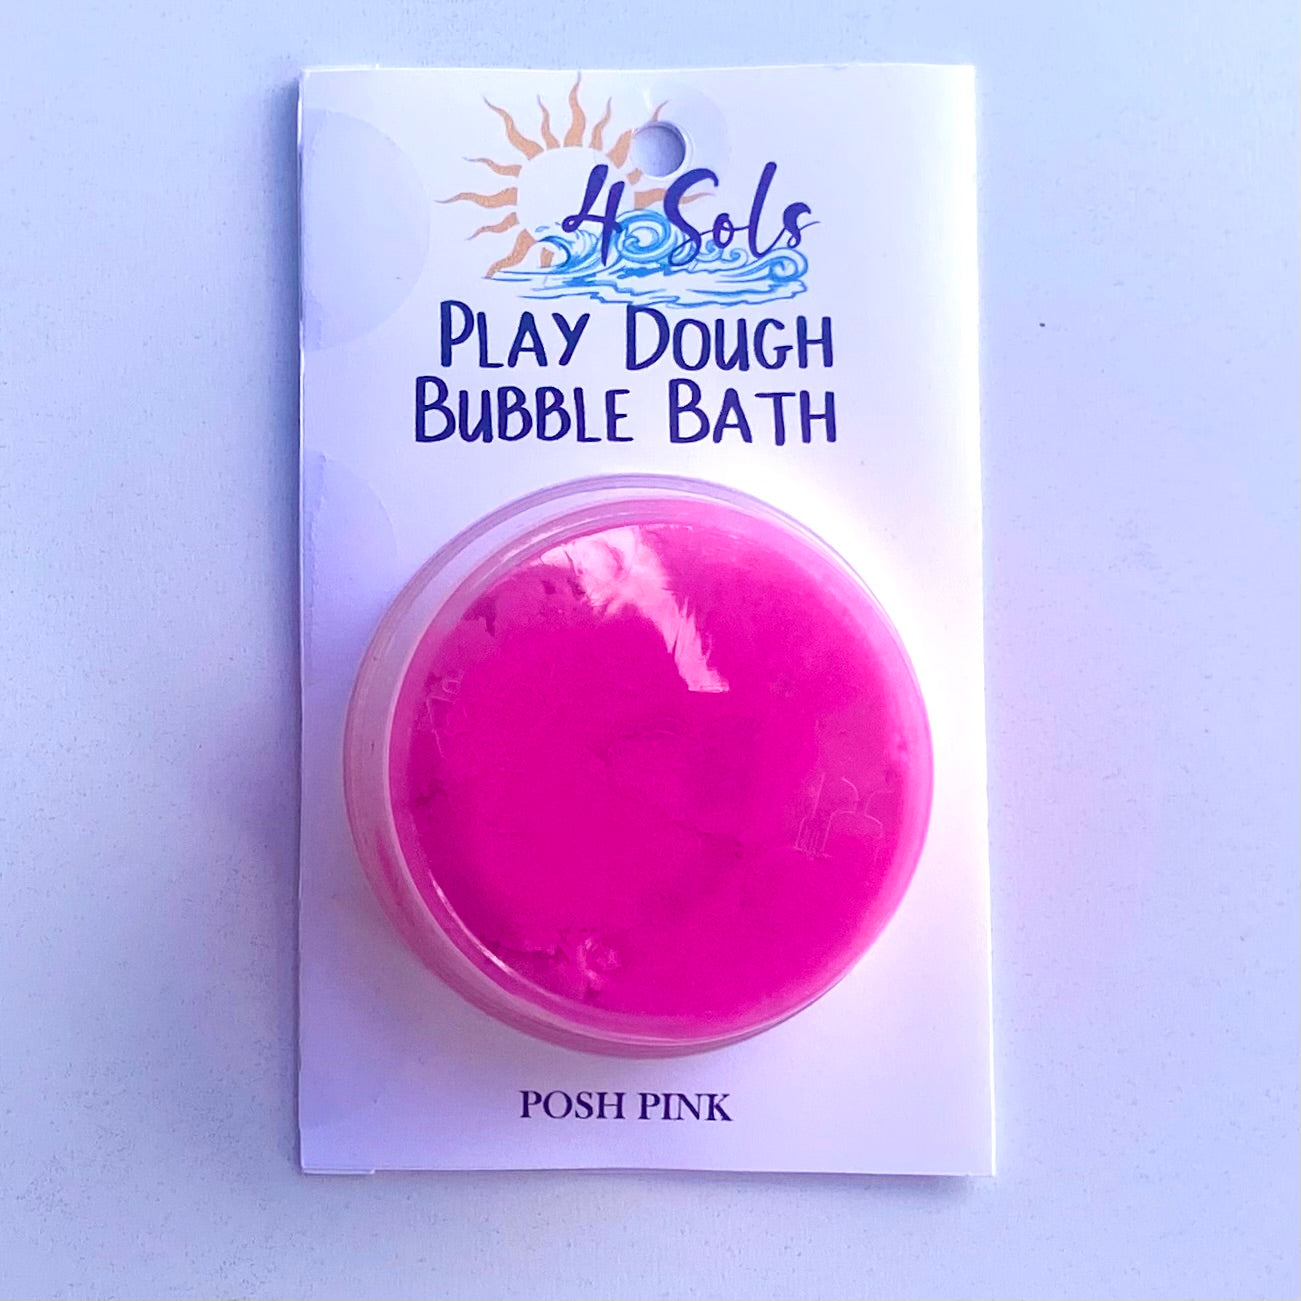 Play Dough Bubble Bath - Pink